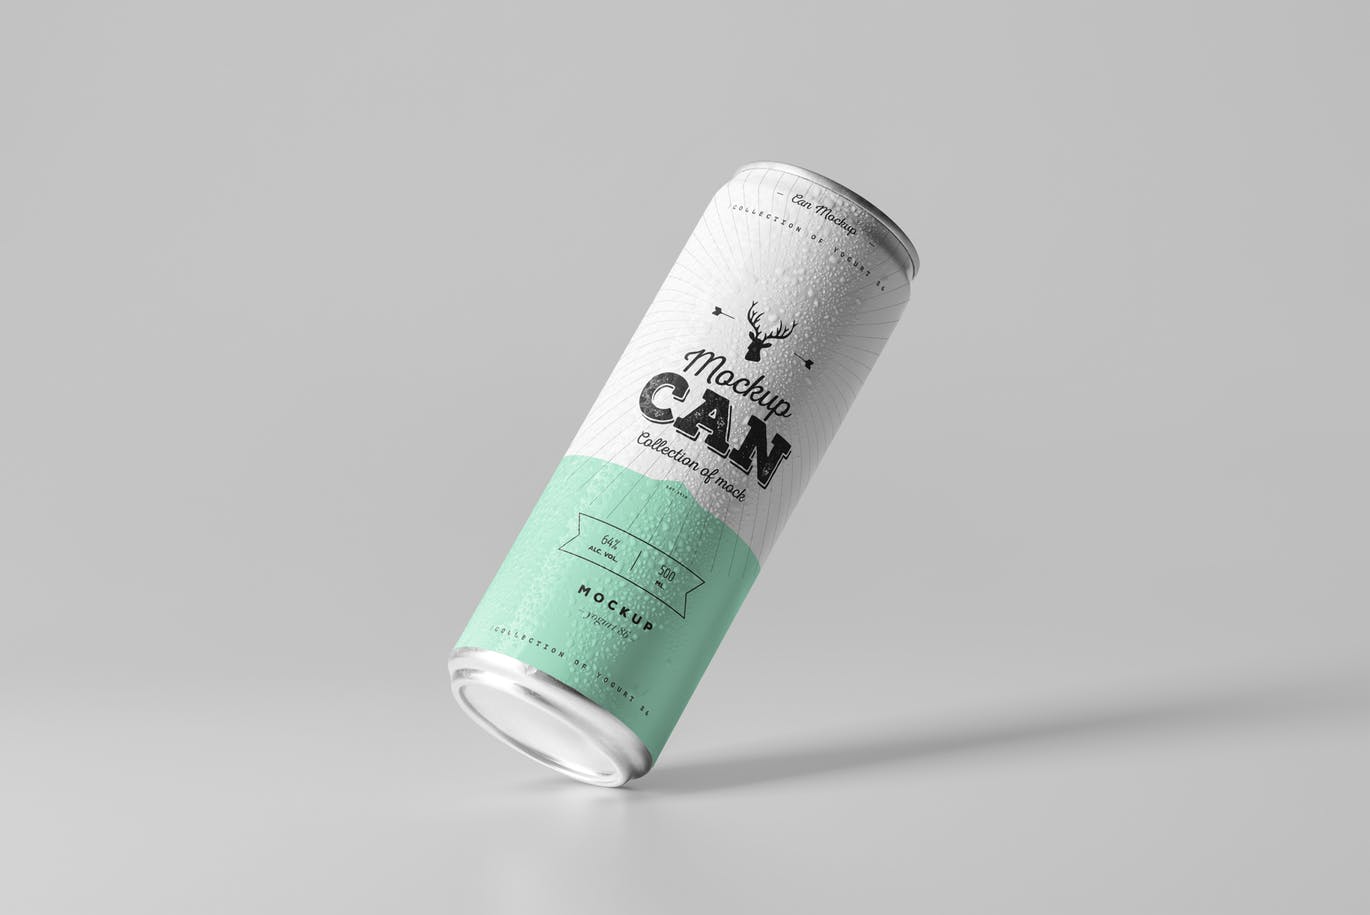 高品质的500ML可乐啤酒易拉罐包装设计can-mock #